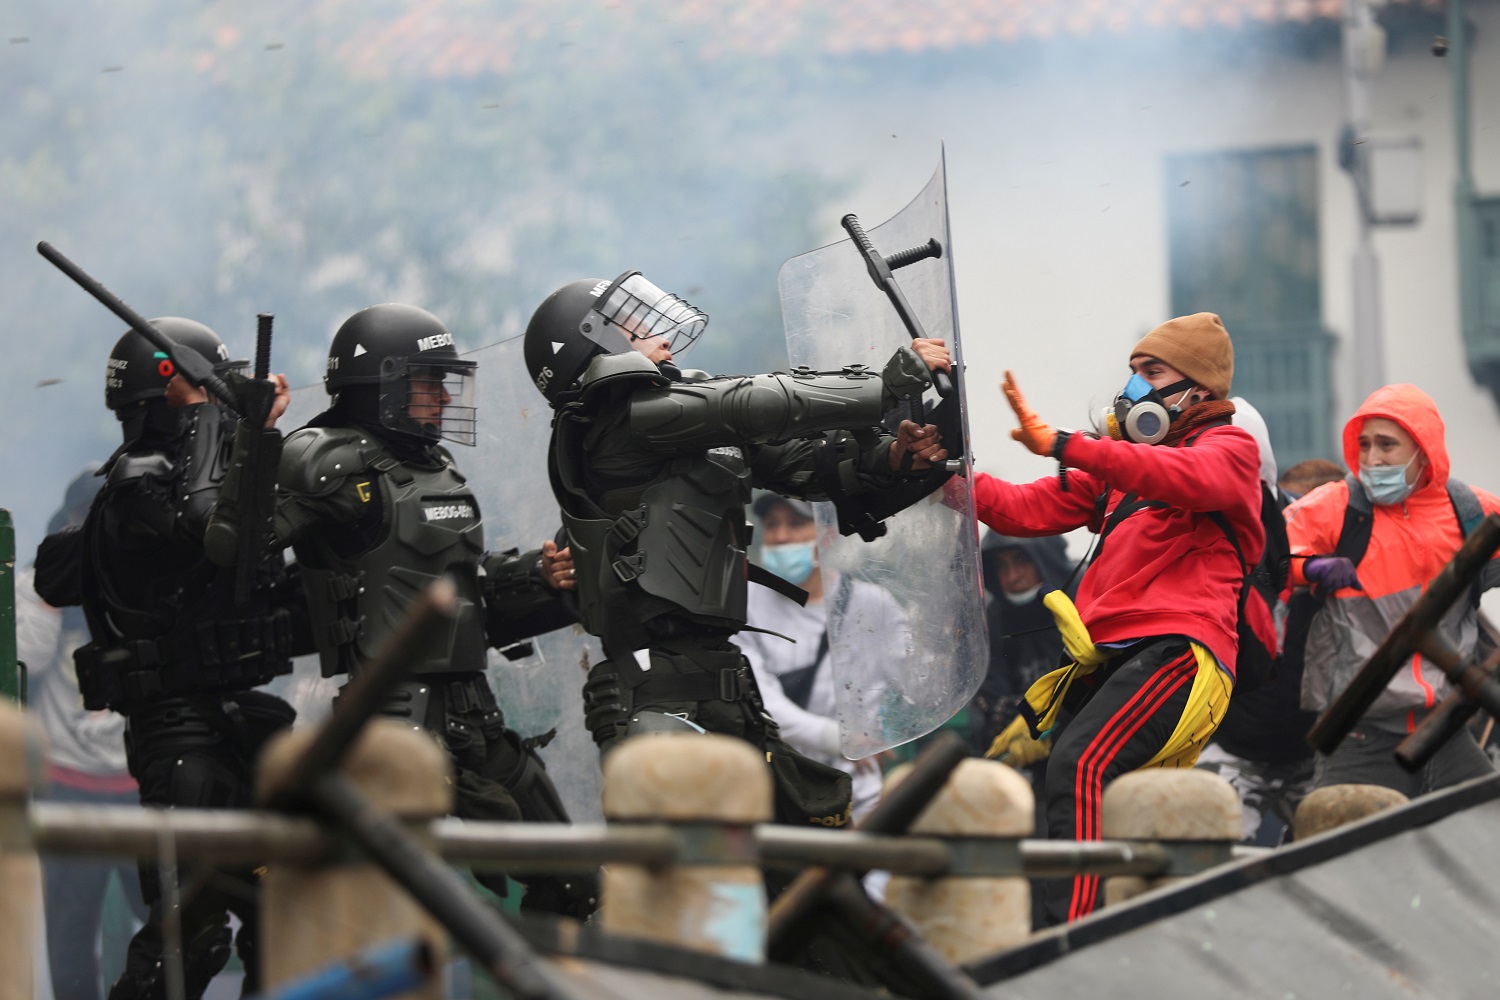 Embajador colombiano en España atribuye violencia en protestas a “vándalos infiltrados”